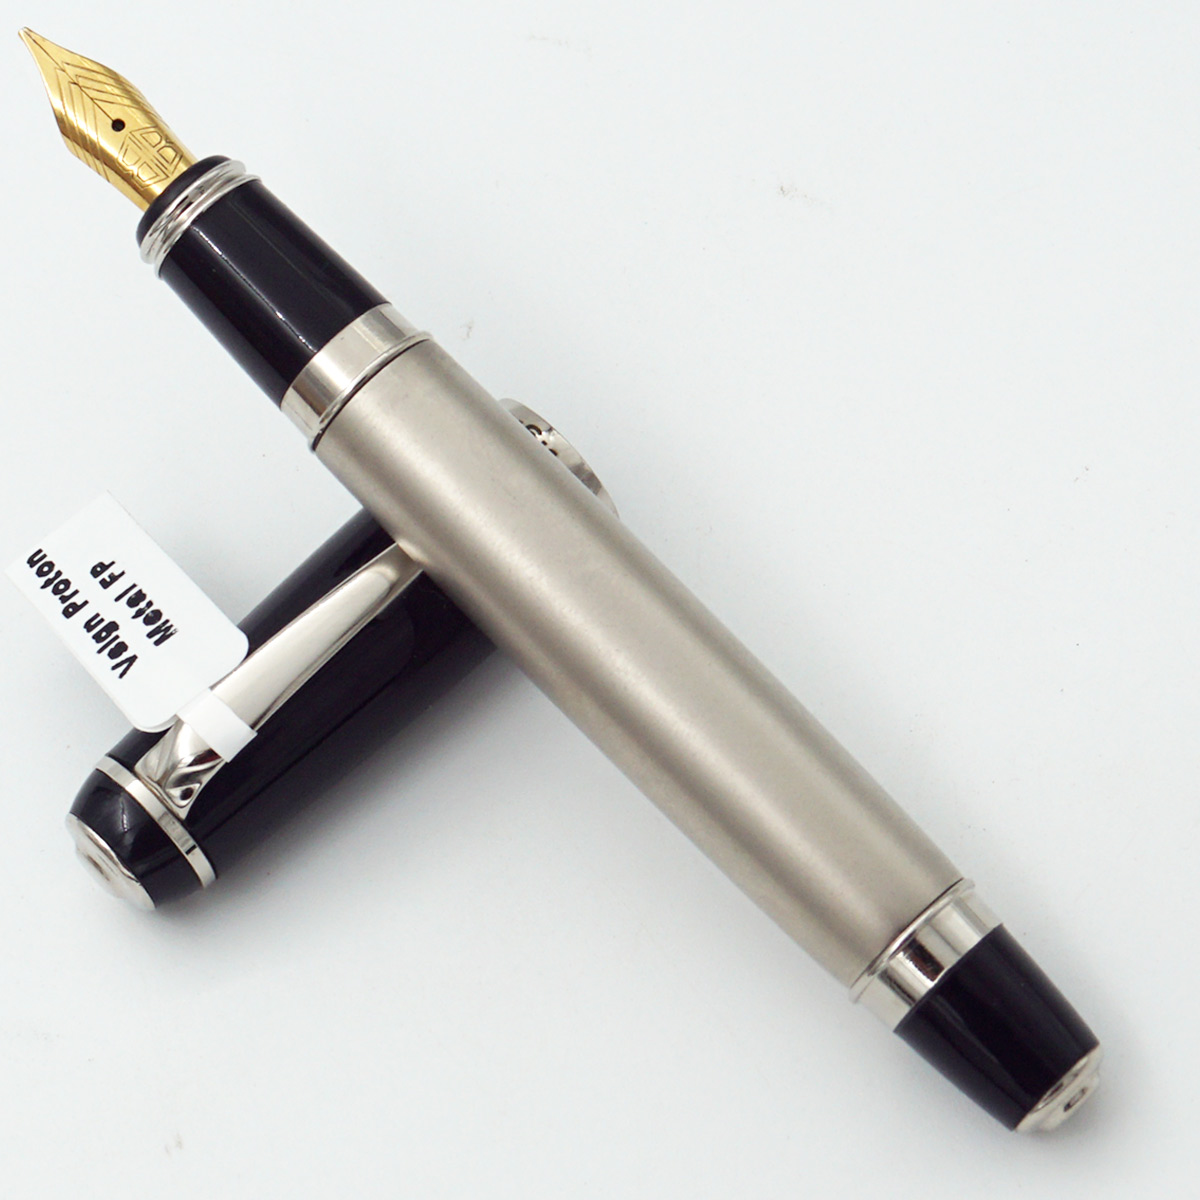 Vsign Proton Metal Silver Color Body With Black Color Cap Bold Nib Converter Type Fountain Pen SKU 24453